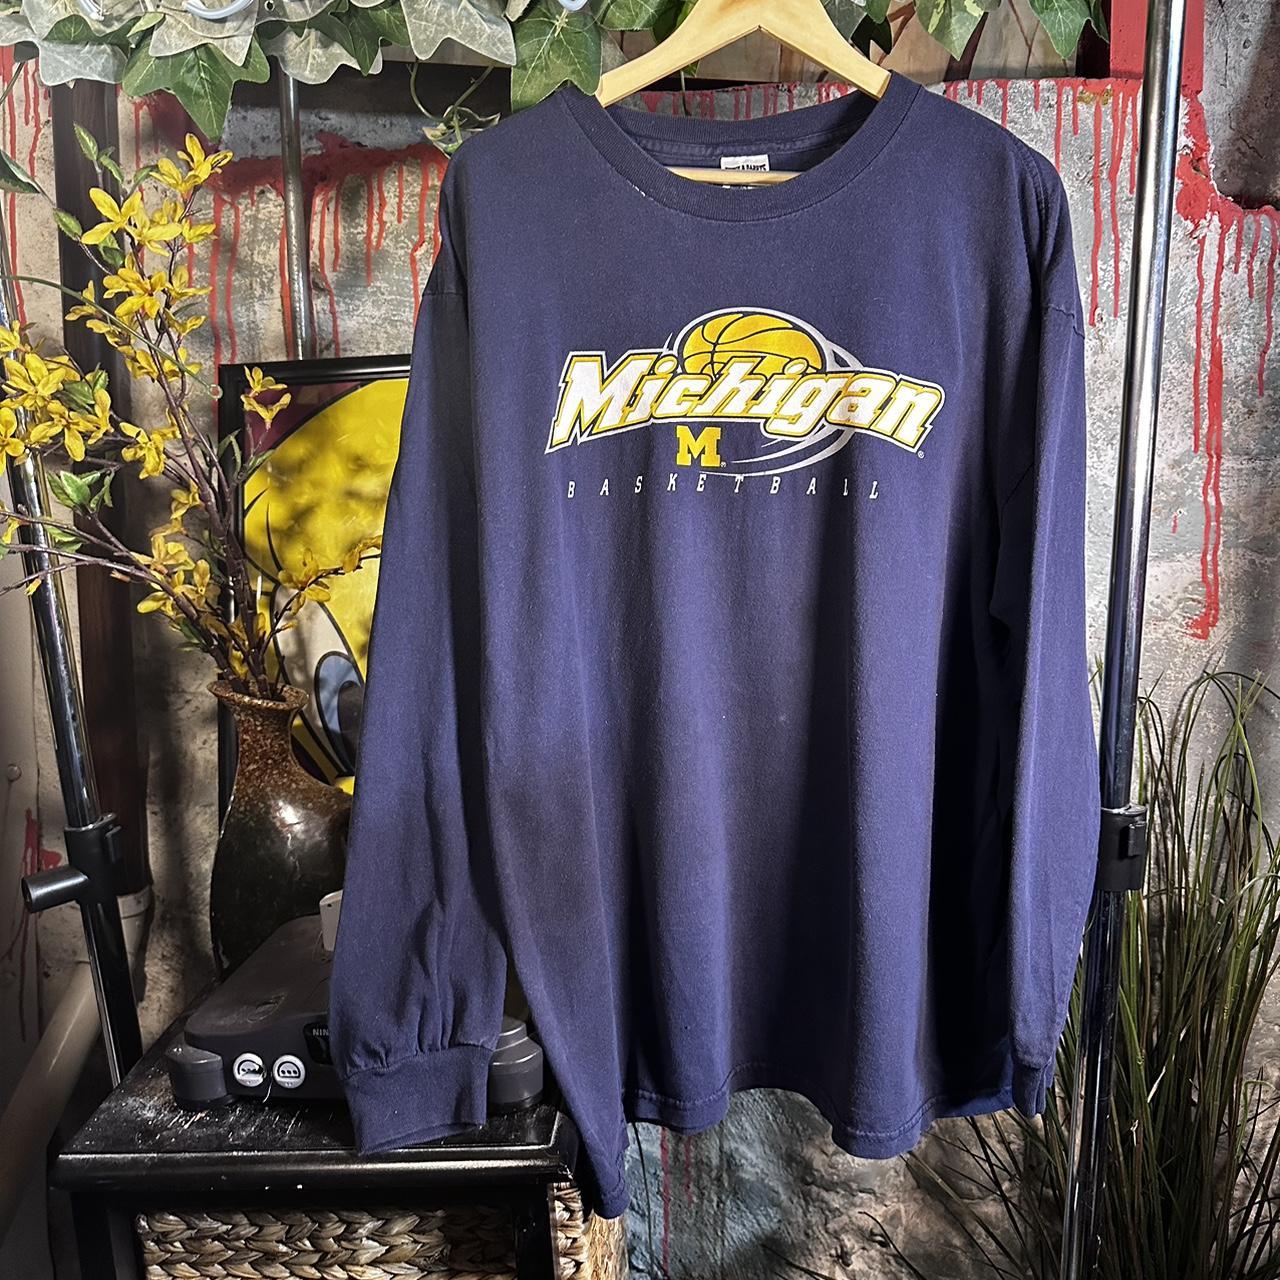 Michigan Basketball Gear, Michigan Basketball Jerseys & T-Shirts